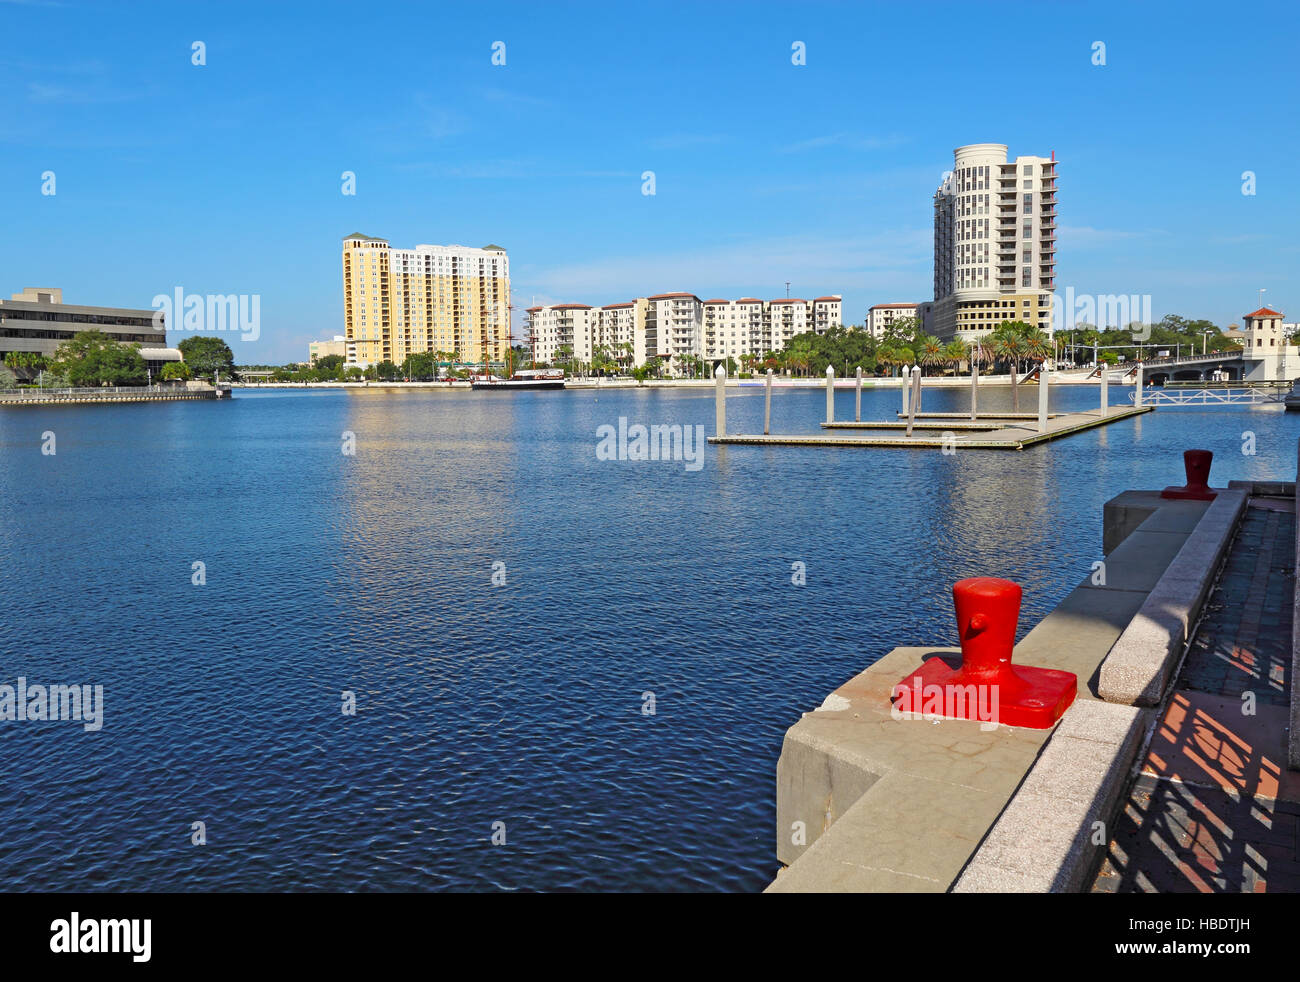 Lo skyline di parziale di Tampa, Florida con appartamento e edifici condominiali alla confluenza del canale Seddon e il fiume Hillsborough visto dal Foto Stock